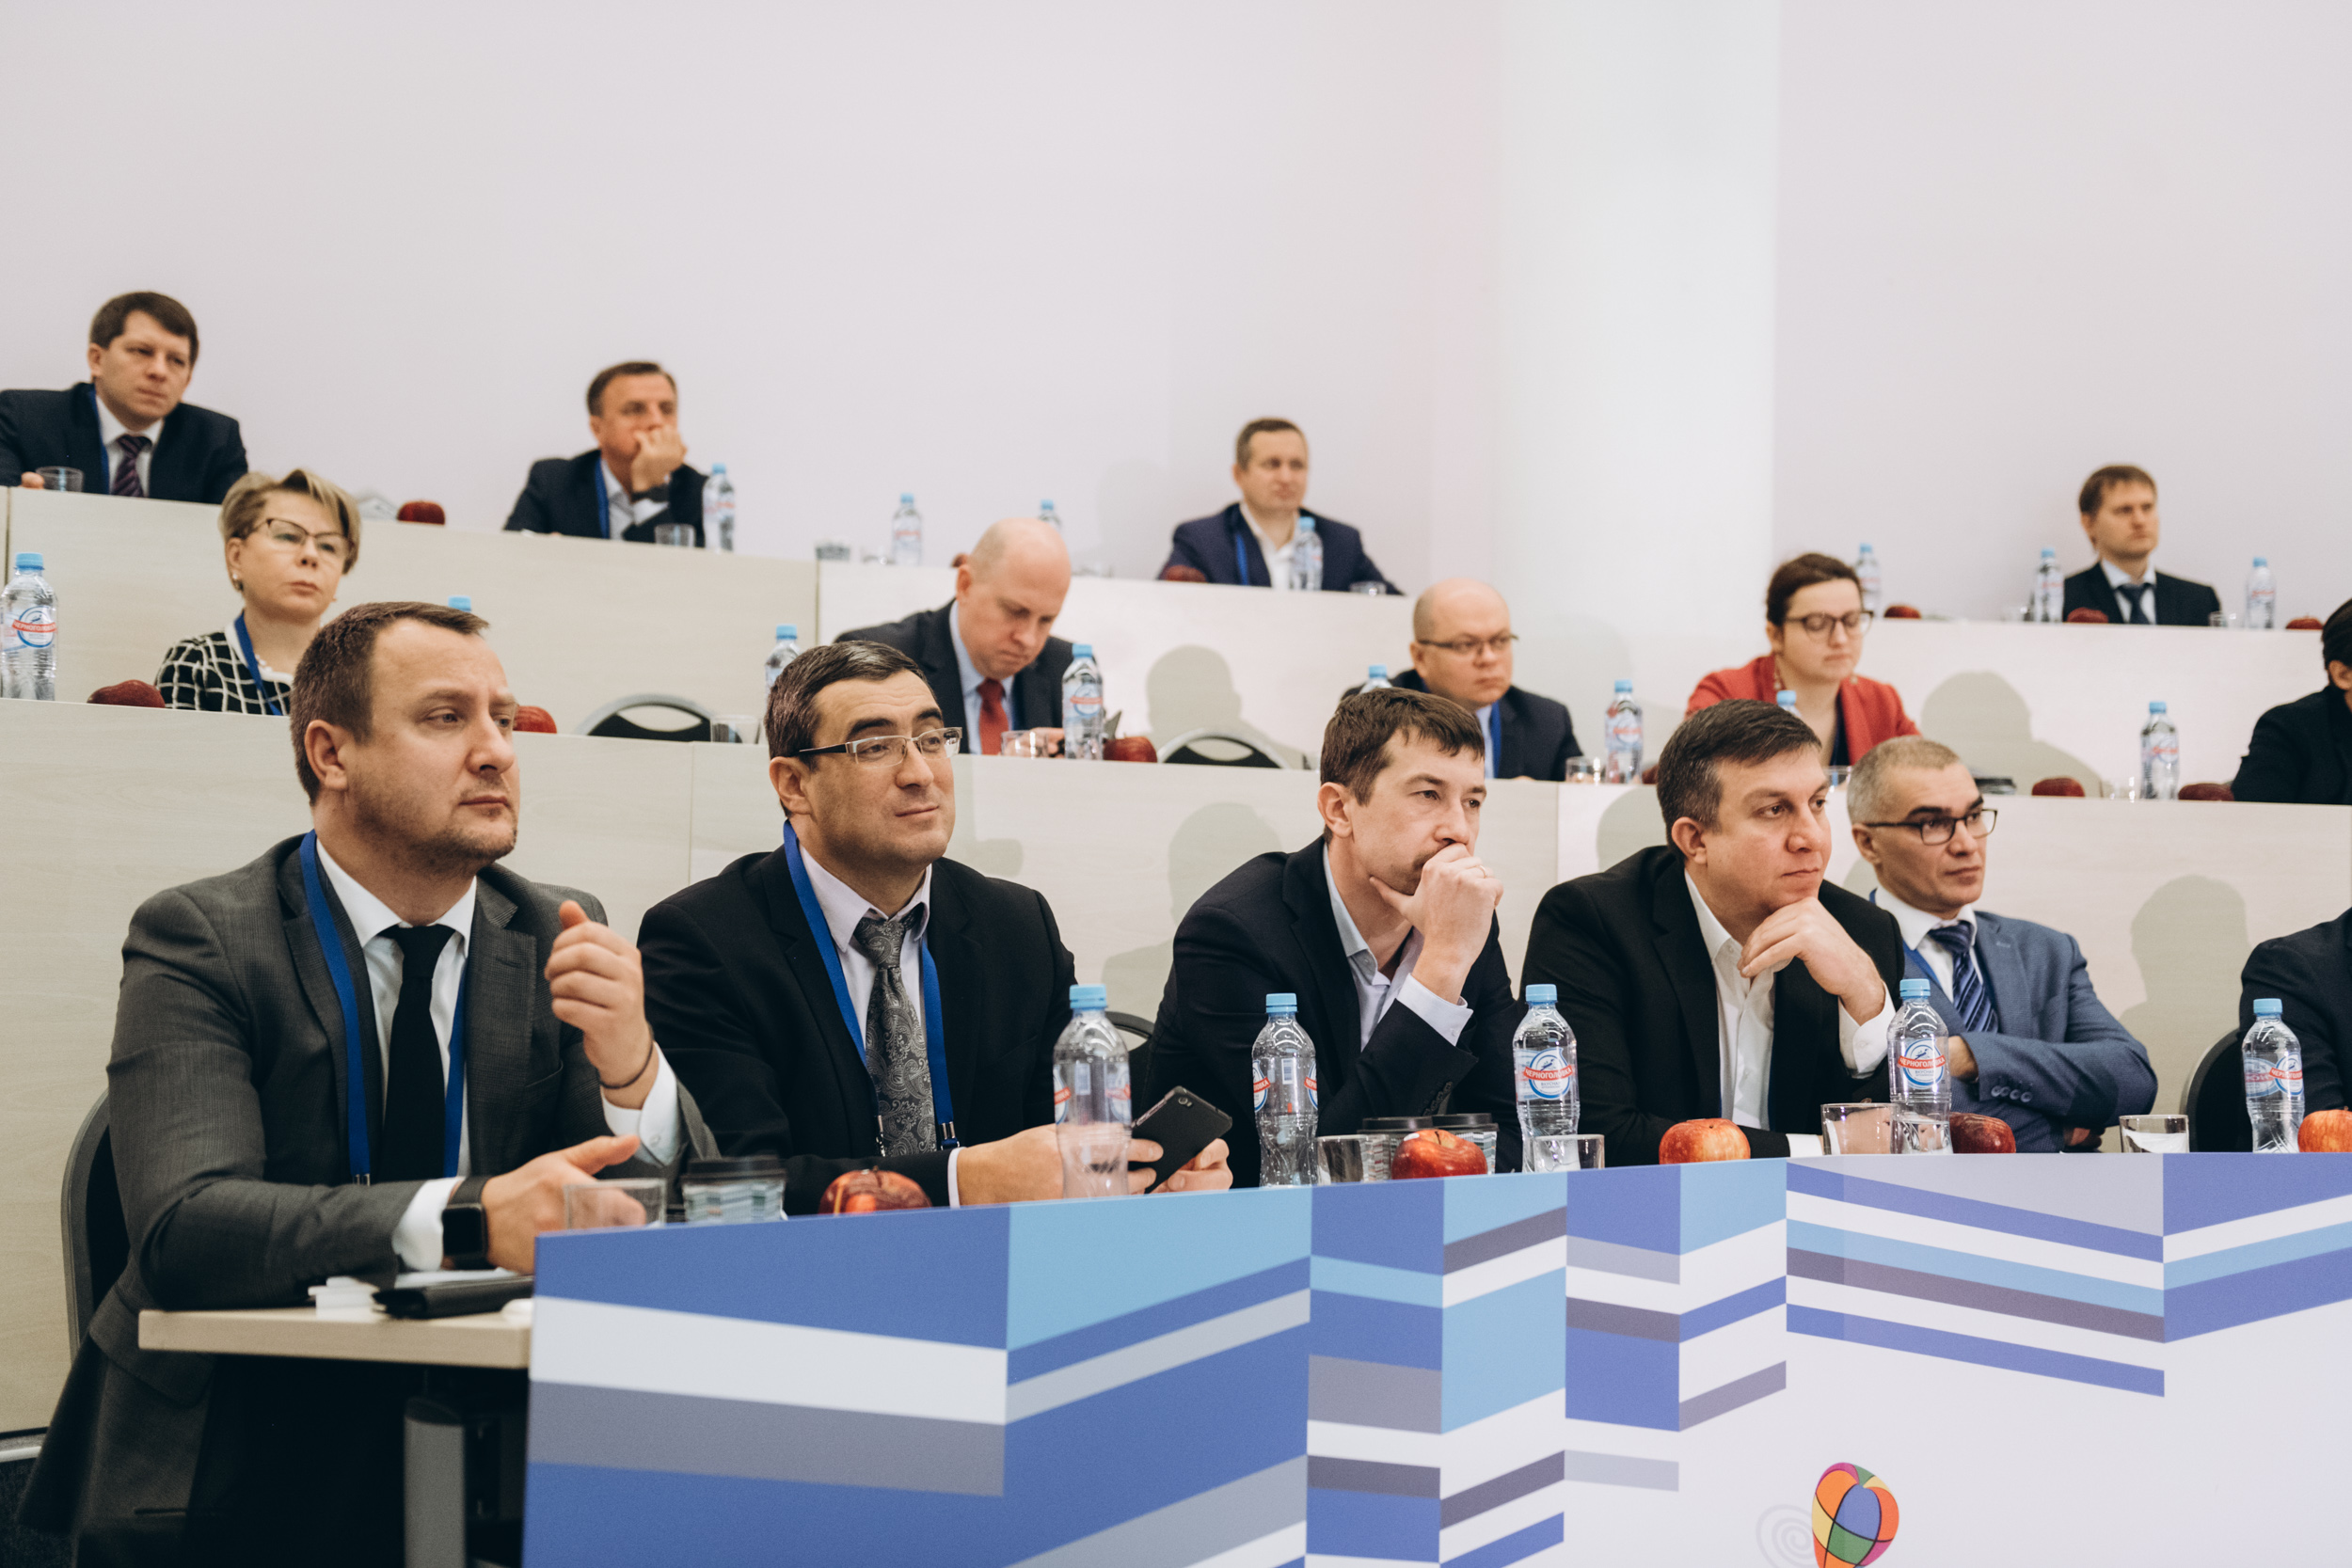 ГК "НОРКЕМ" приняла участие во 2-ом Нефтяном Диалоге в Сколково 18 декабря 2018 г.